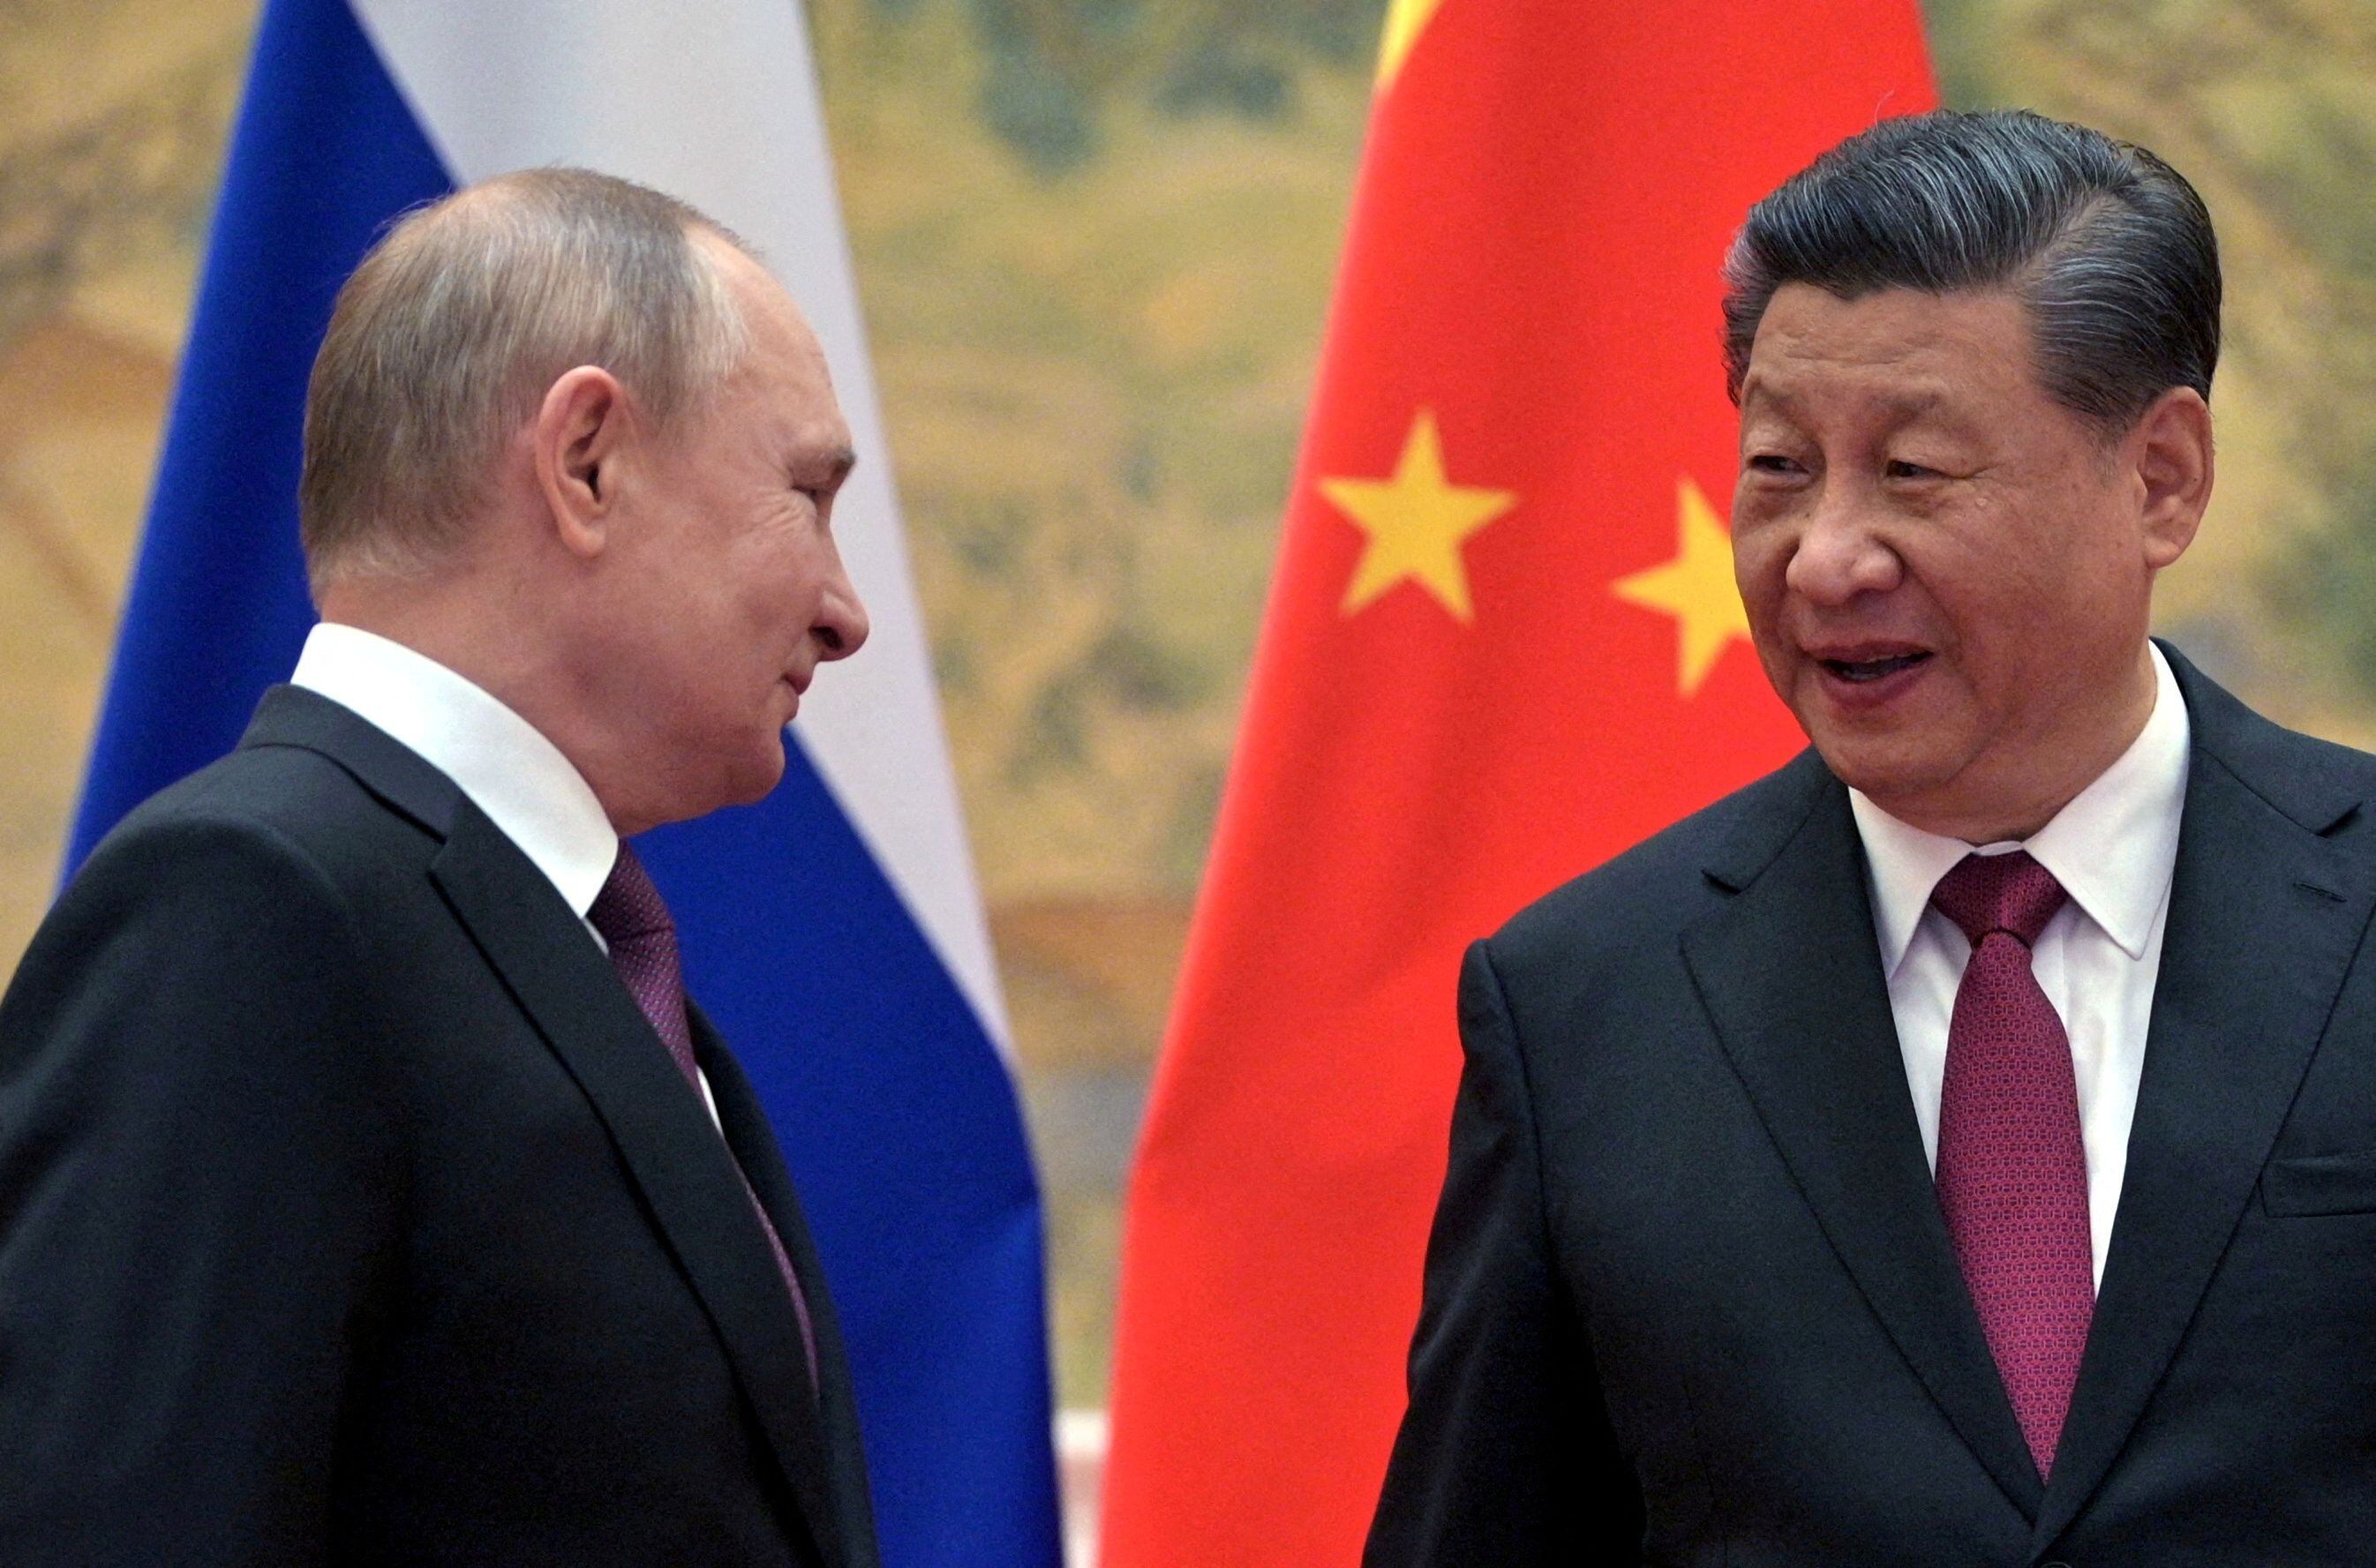 El presidente ruso, Vladimir Putin, asiste a una reunión con el presidente chino, Xi Jinping (REUTERS )